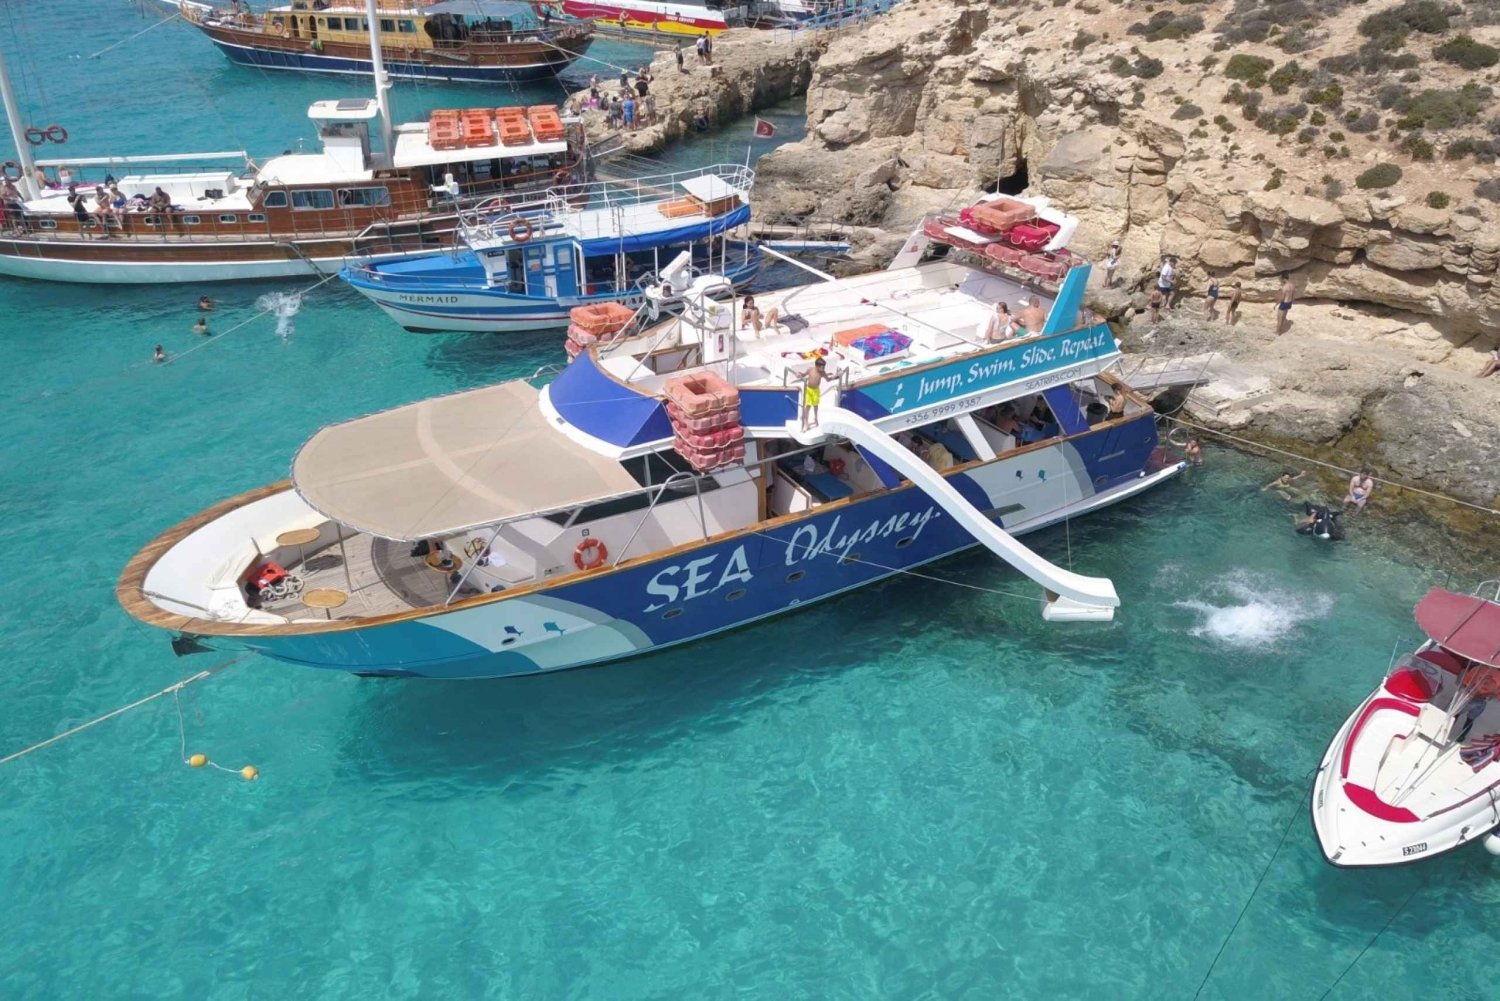 De Malta: Passeio de Barco e Natação nas Três Ilhas